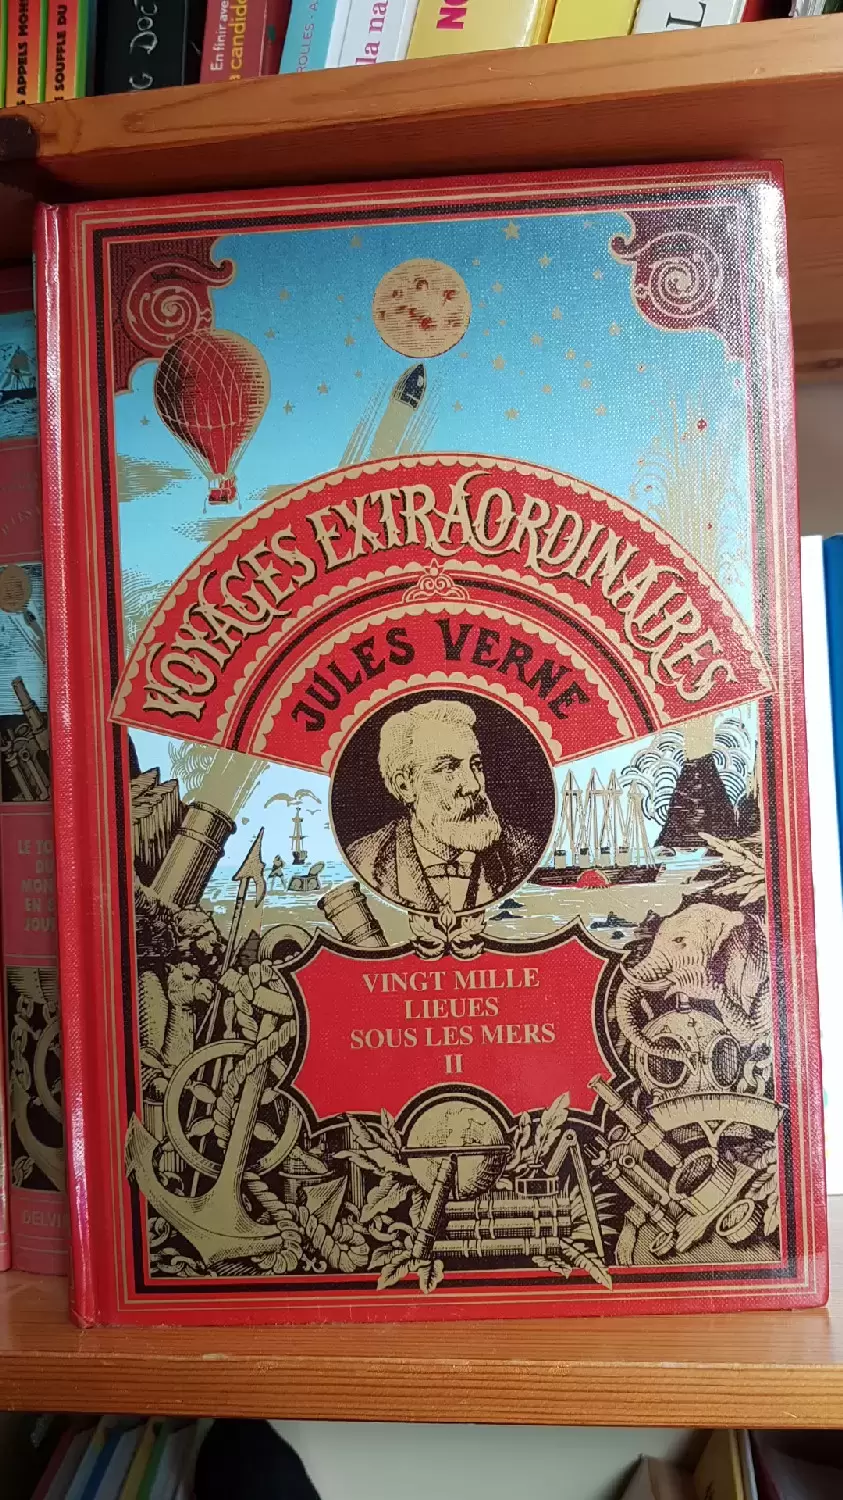 Jules Verne - Voyage extraordinaire - vingt mille lieux sous les mers 2